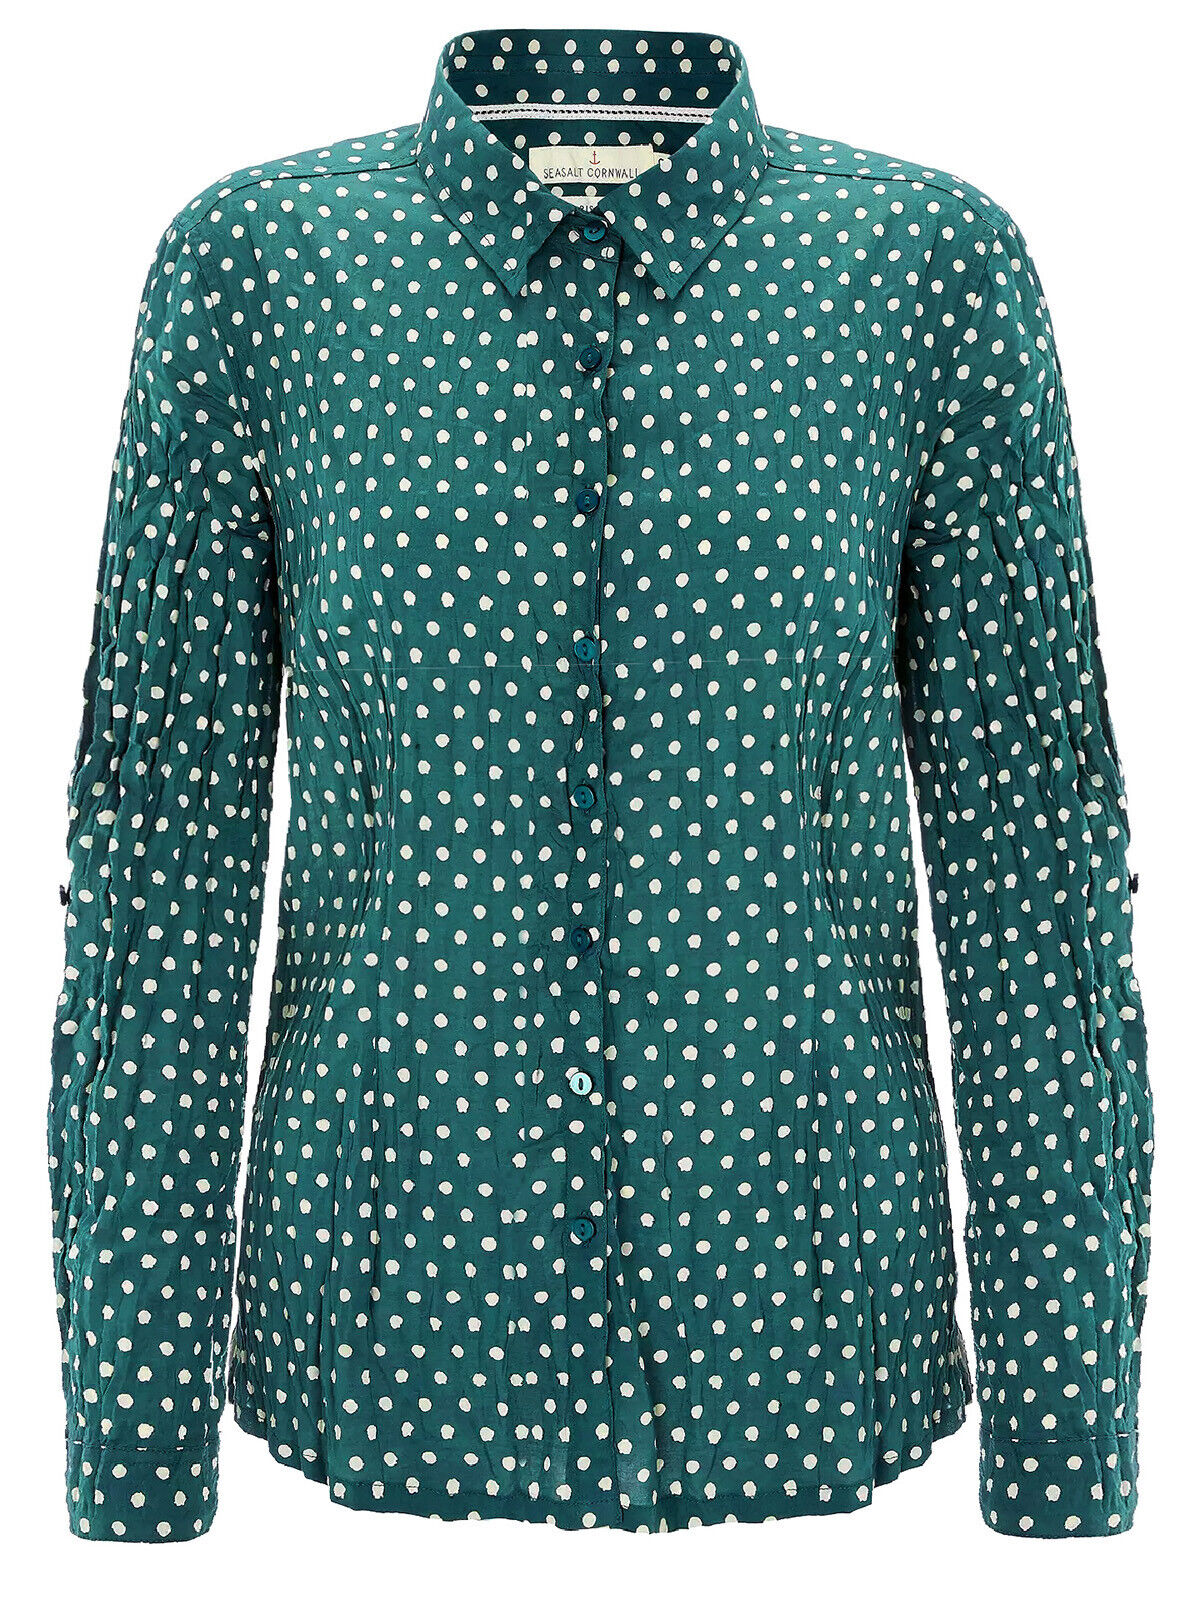 EX SEASALT Green Polka Dot Organic Cotton Larissa Shirt Sizes 8 or 10 RRP £45